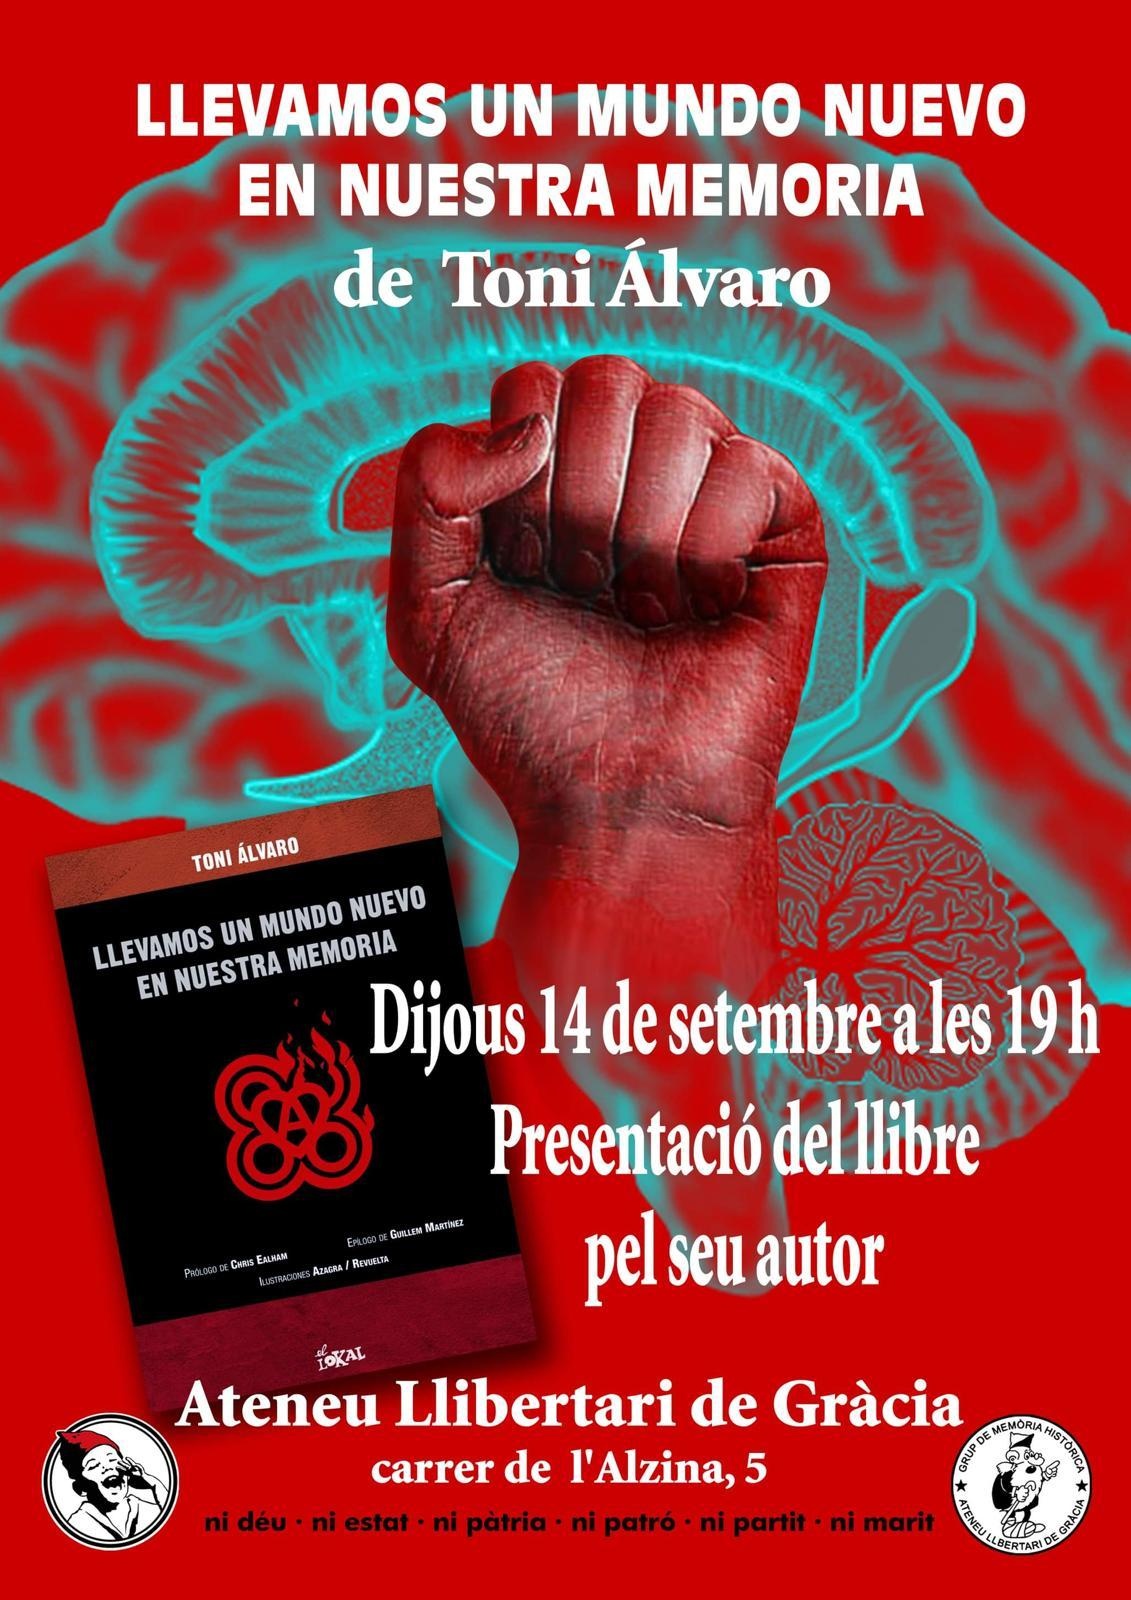 Presentació del llibre "LLEVAMOS UN MUNDO NUEVO EN NUESTRA MEMORIA" de Toni Alvaro